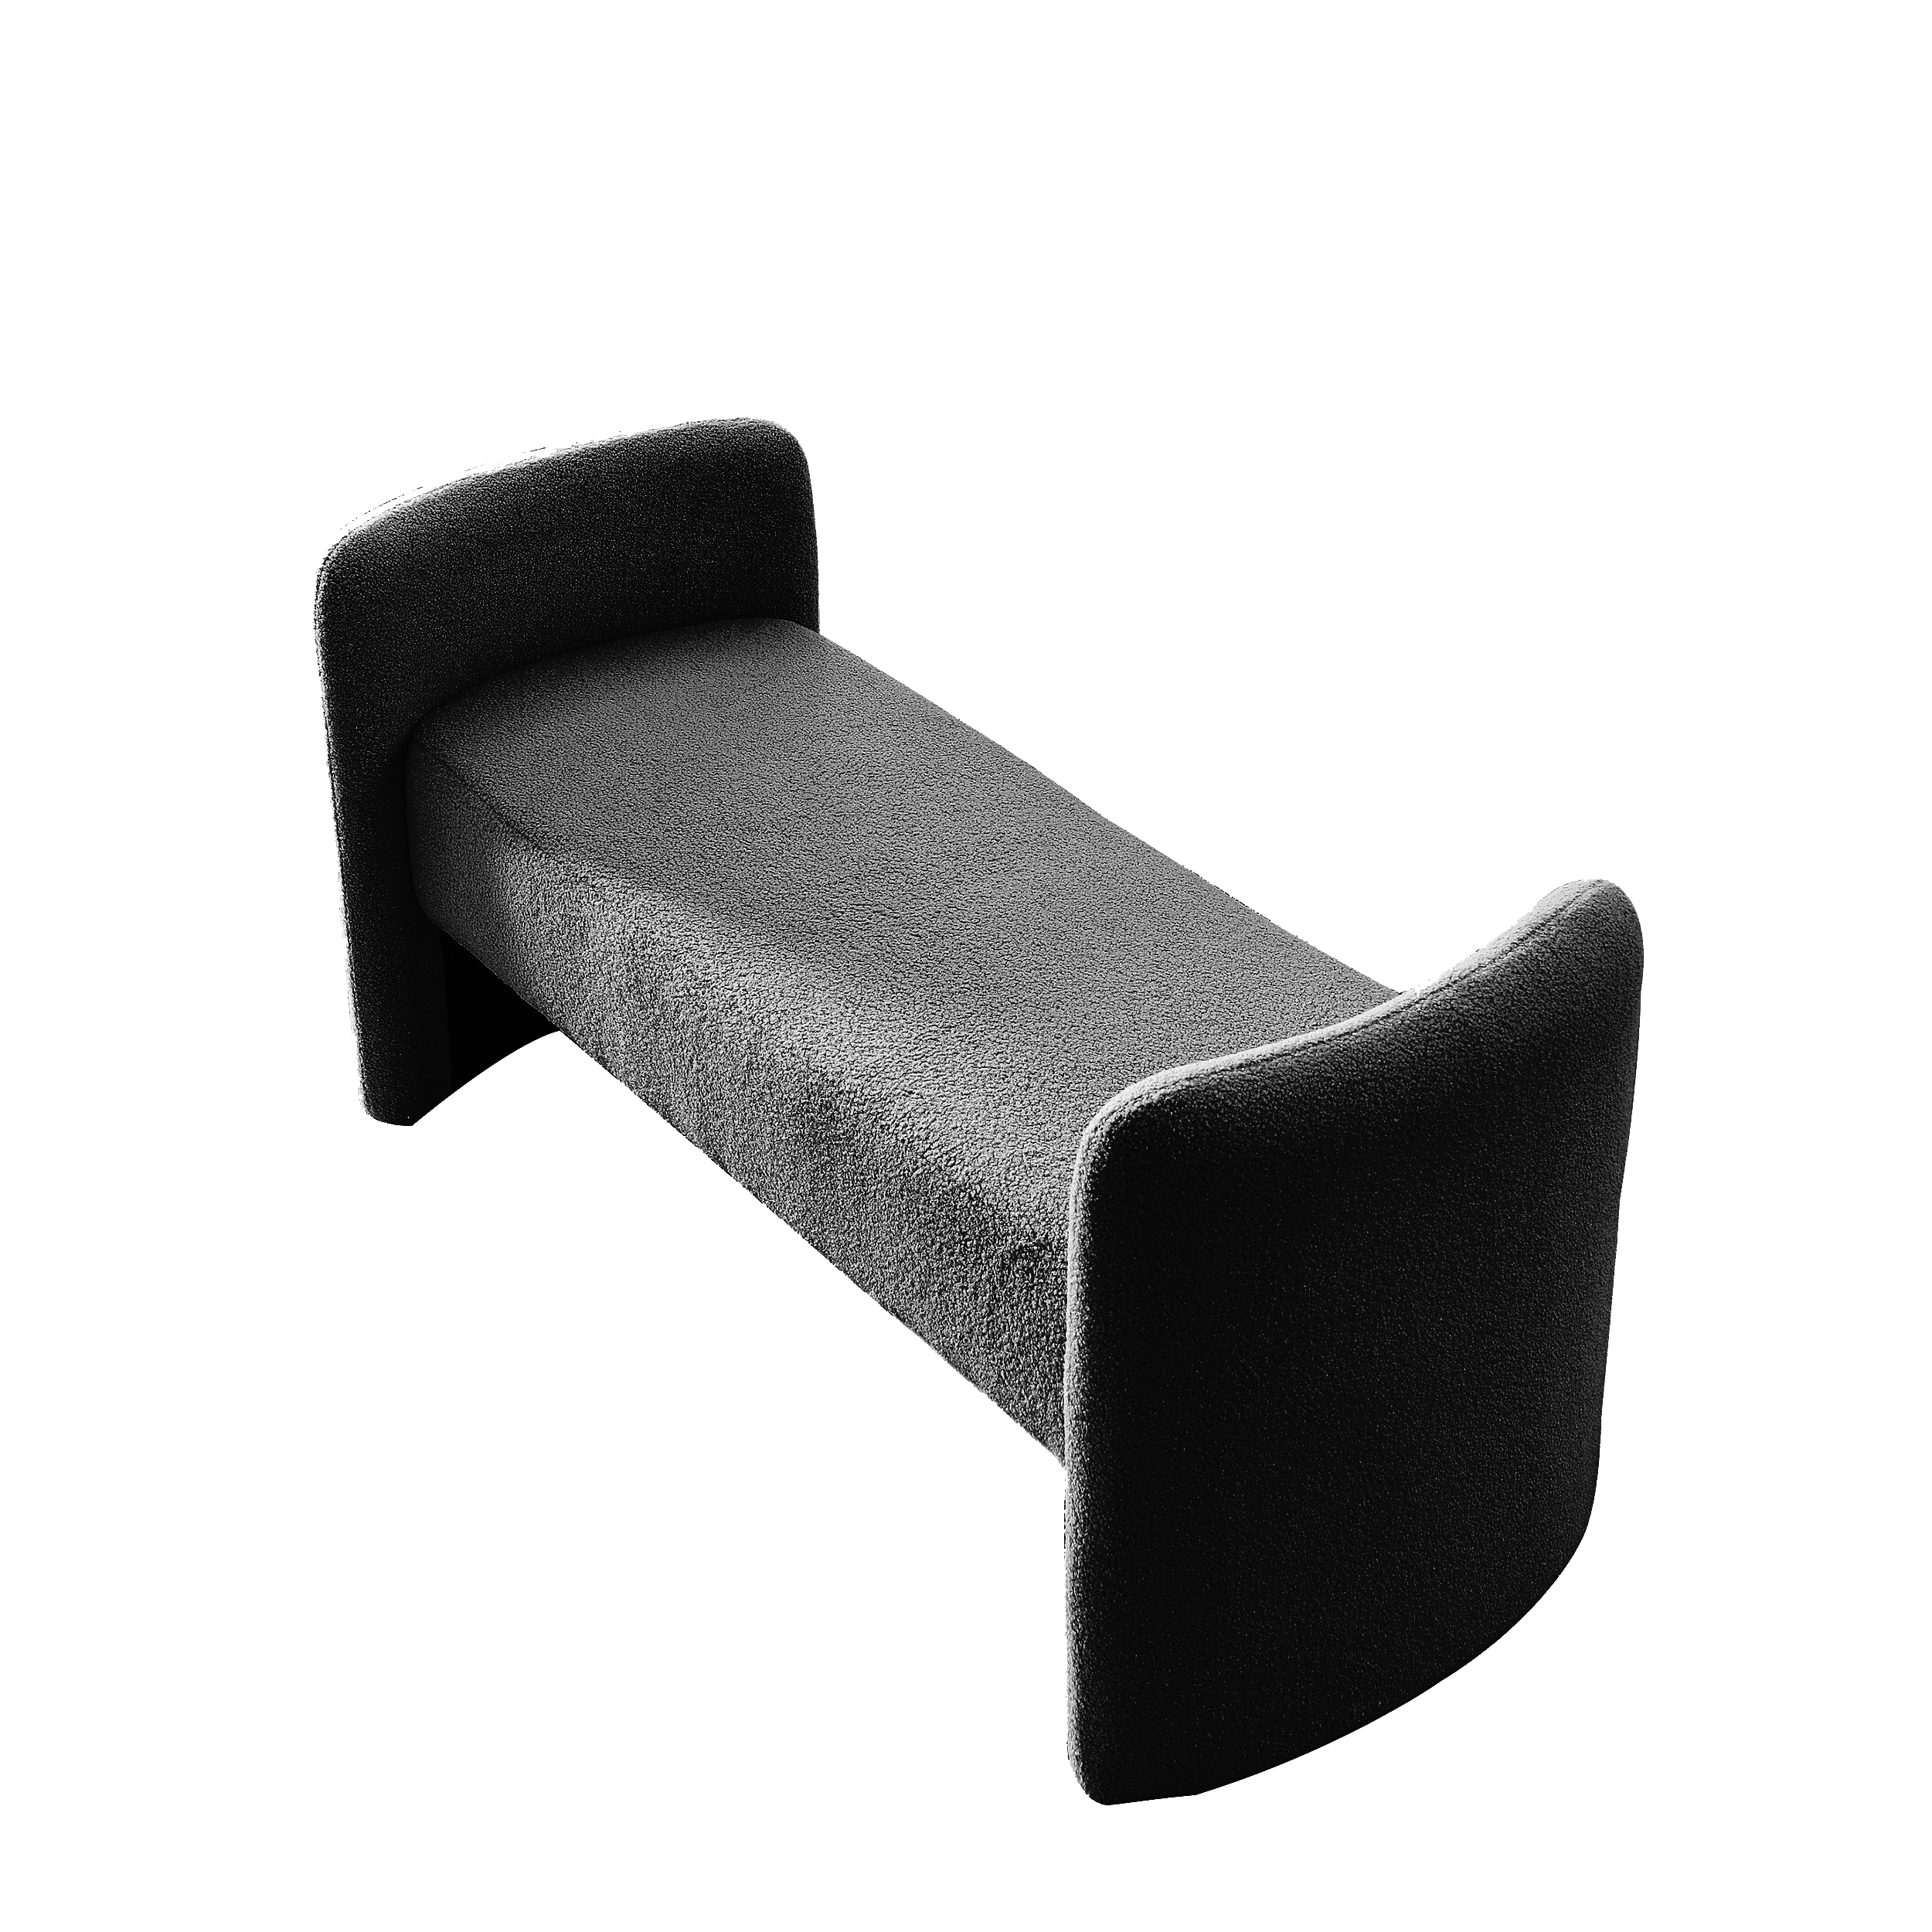 52" Bench Contemporary Design Ottoman - Black Teddy